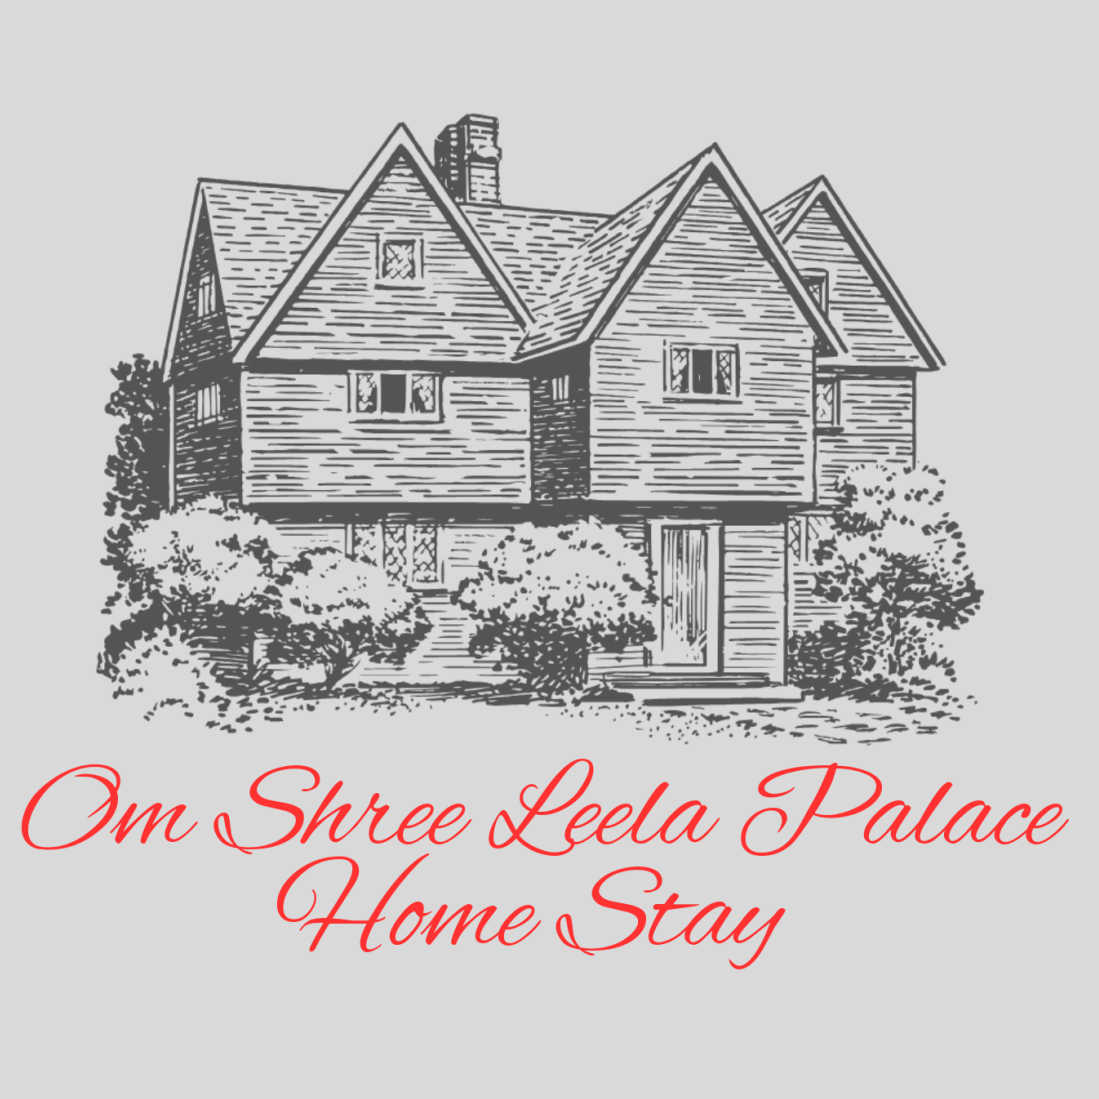 Shree leela palace home stay